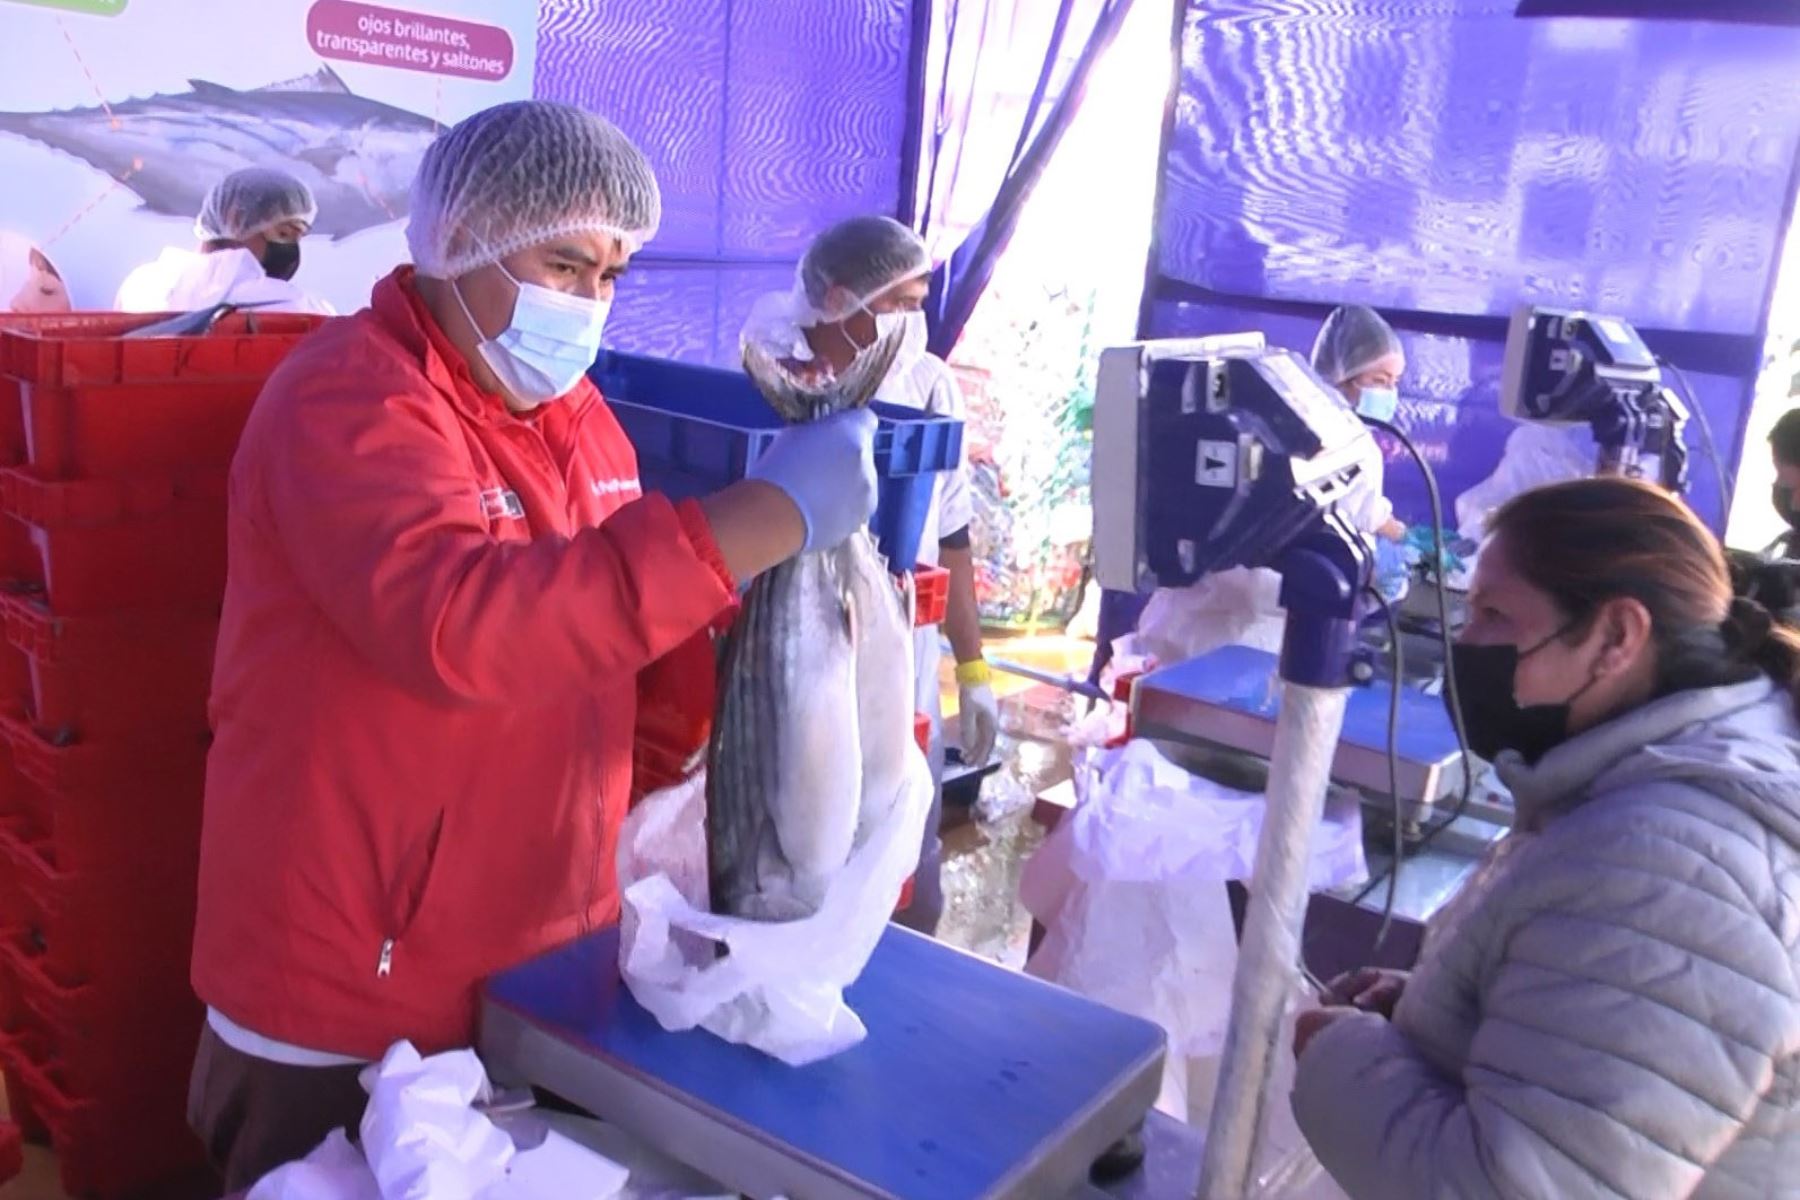 El kilo de pescado bonito se comercializó a S/ 3.50 el kilo en la ciudad de Huancayo durante la actividad “Recicla y a comer pescado”.